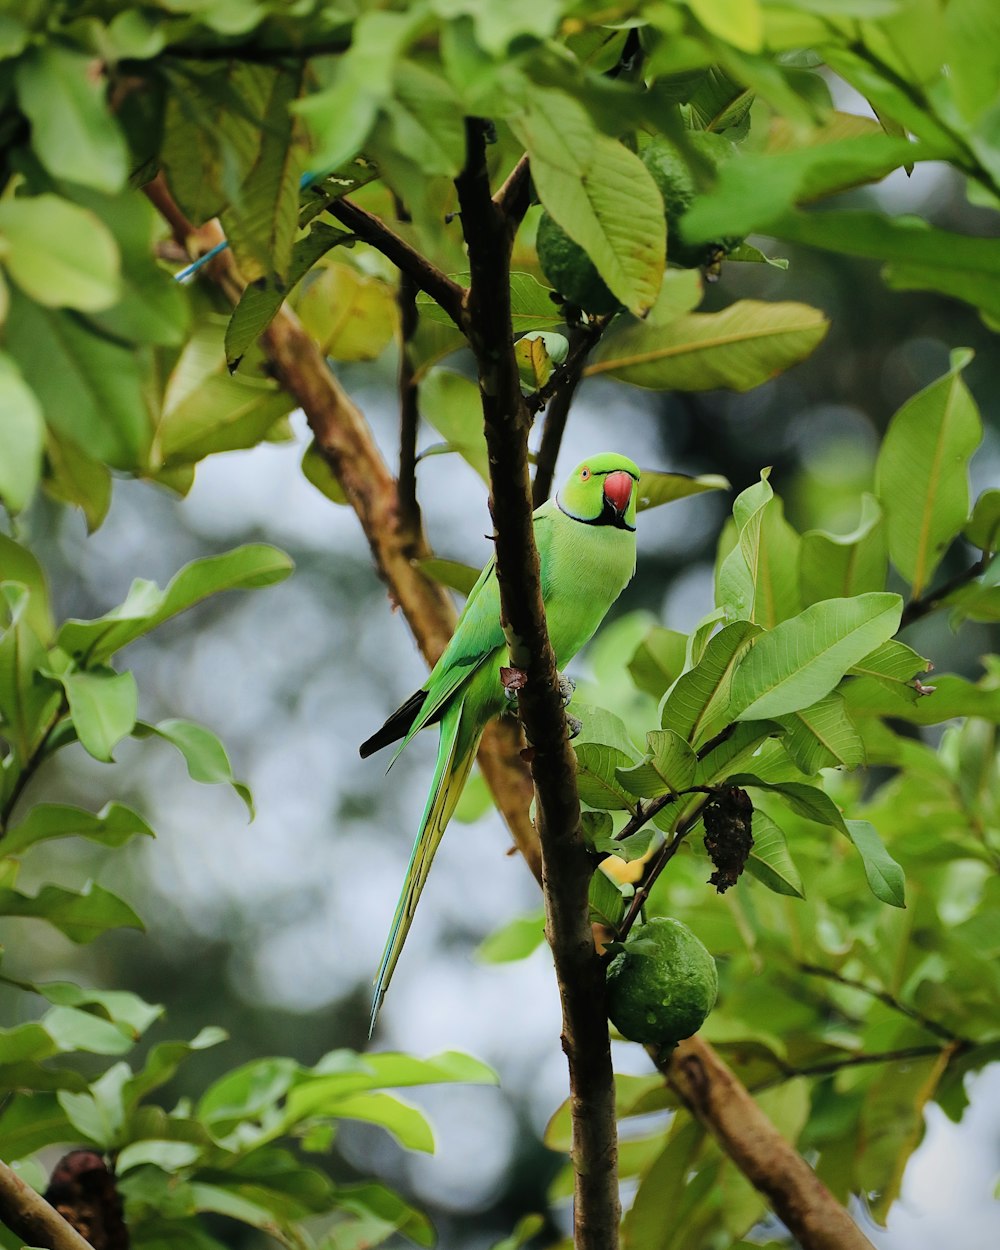 uccello verde e giallo sul ramo marrone dell'albero durante il giorno